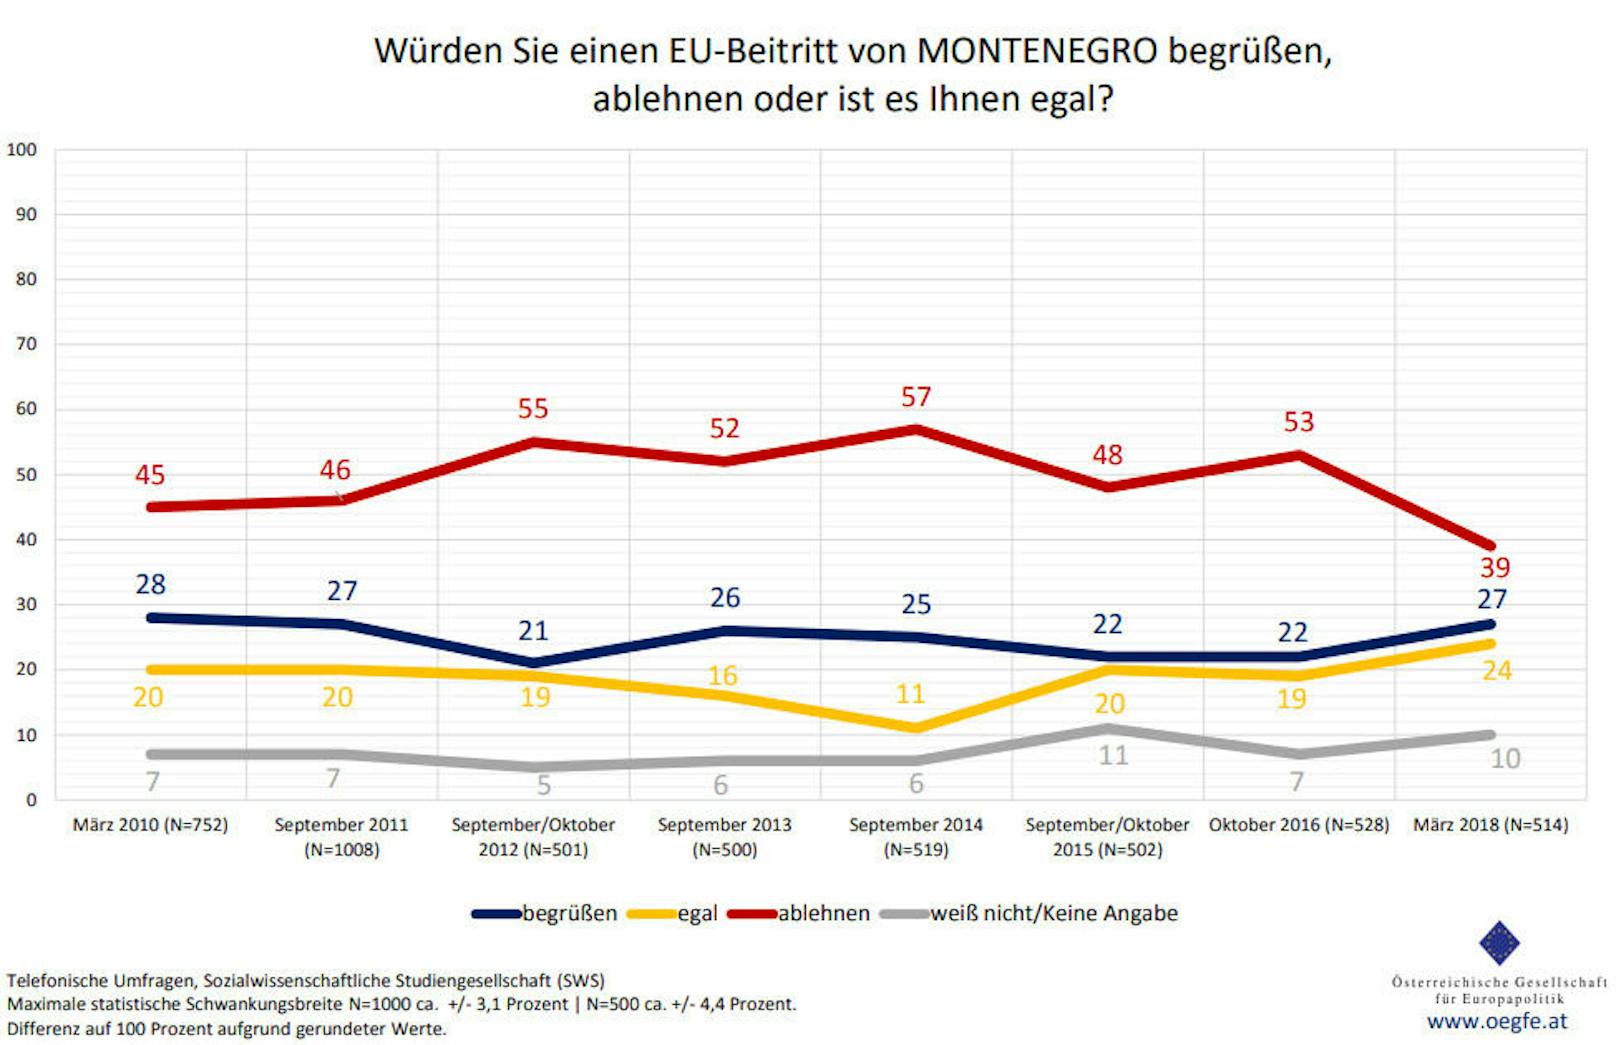 Nahezu ident ist die Einstellung zu einem potentiellen EU-Zugang <b>Montenegro</b>: 27 Prozent würden das Land an der Adria als neues EU-Mitglied begrüßen, 39 Prozent jedoch ablehnen, 24 Prozent antworten "egal".